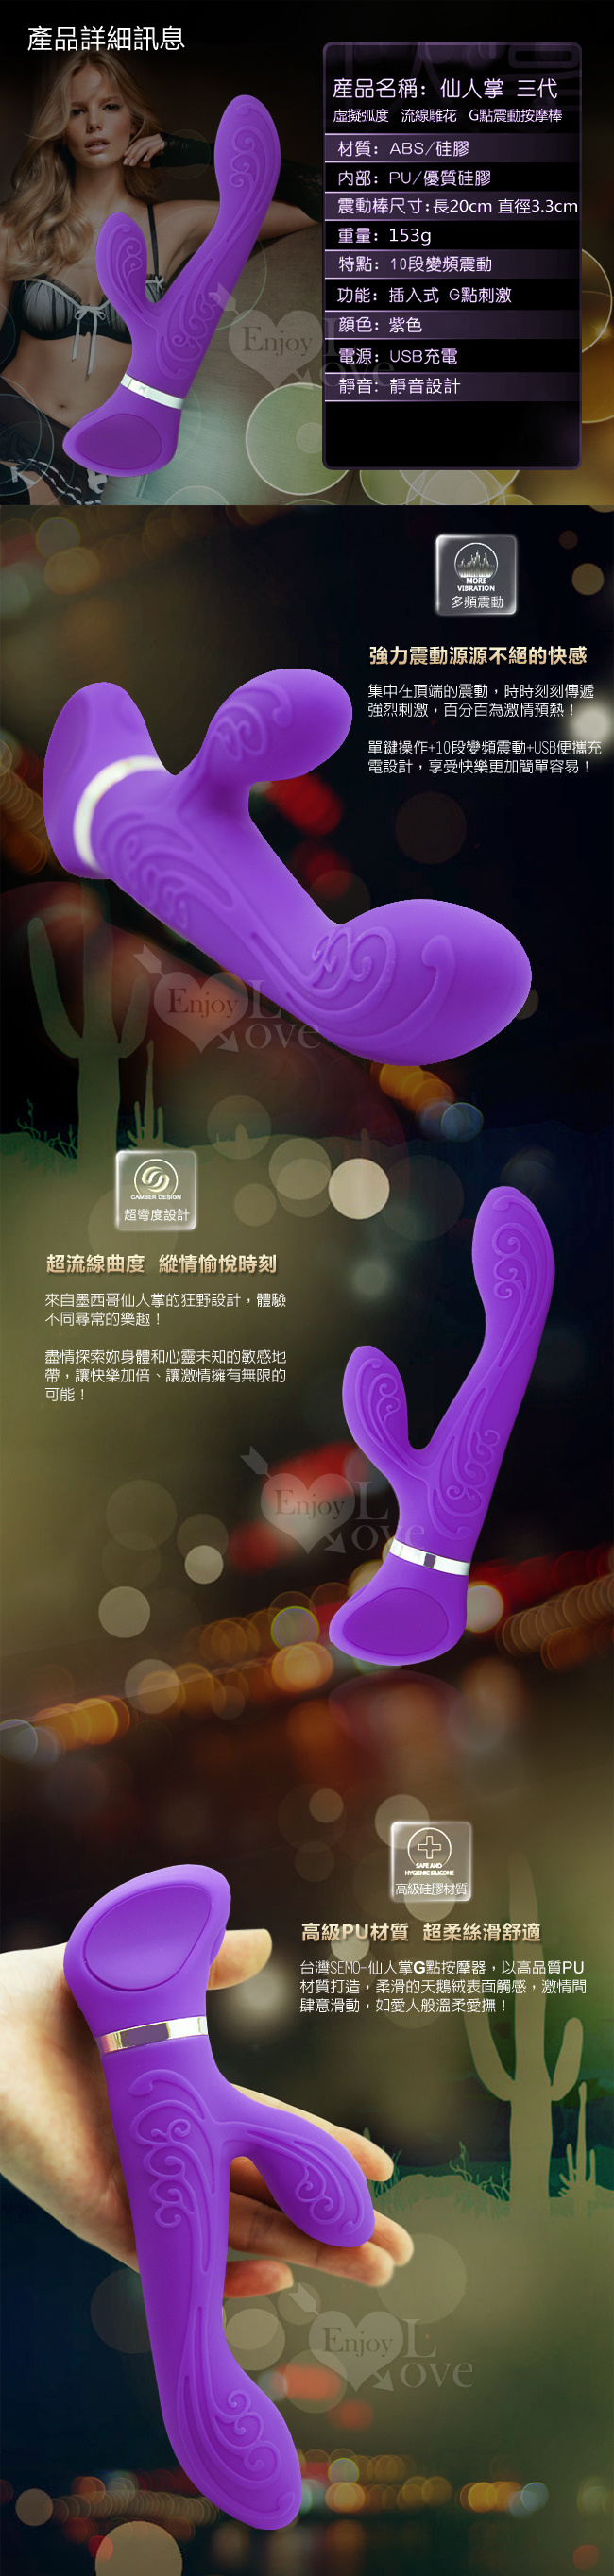 台灣SEMO．仙人掌 3代-雕花流線G點震動按摩棒(紫)#522889